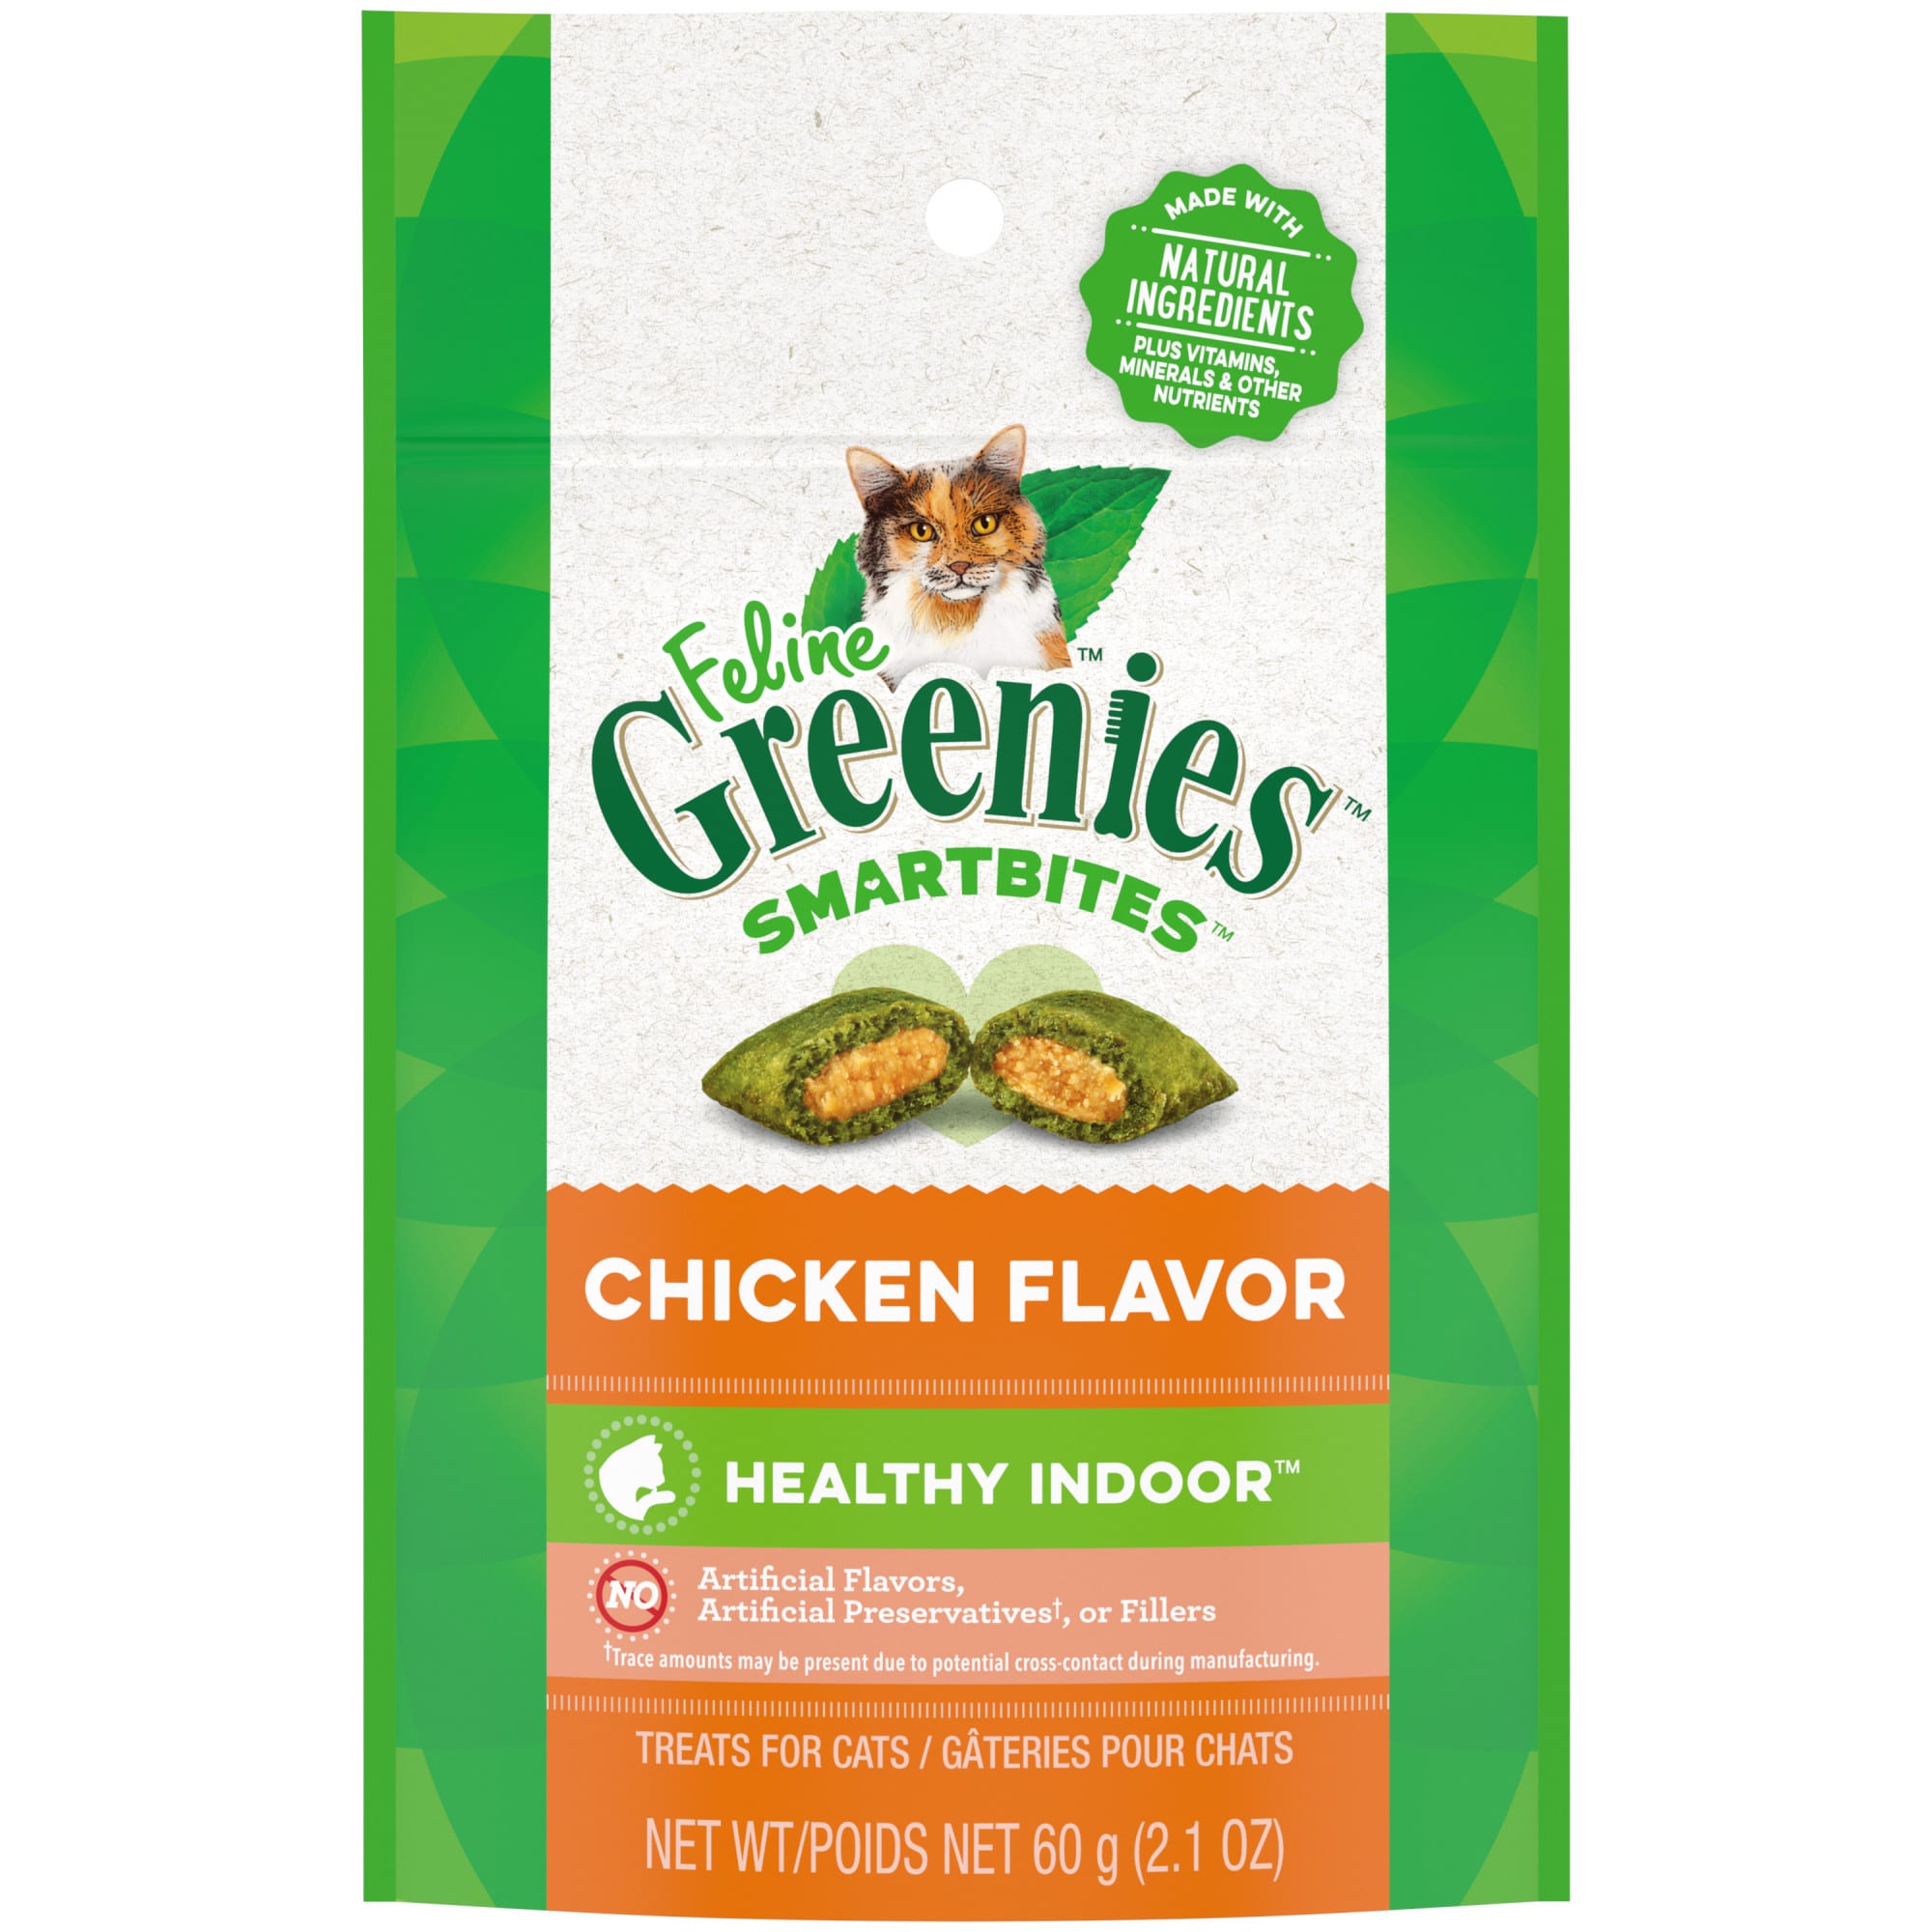 Photos - Cat Food Greenies Smartbites Healthy Indoor Chicken Flavor Natural Treats 